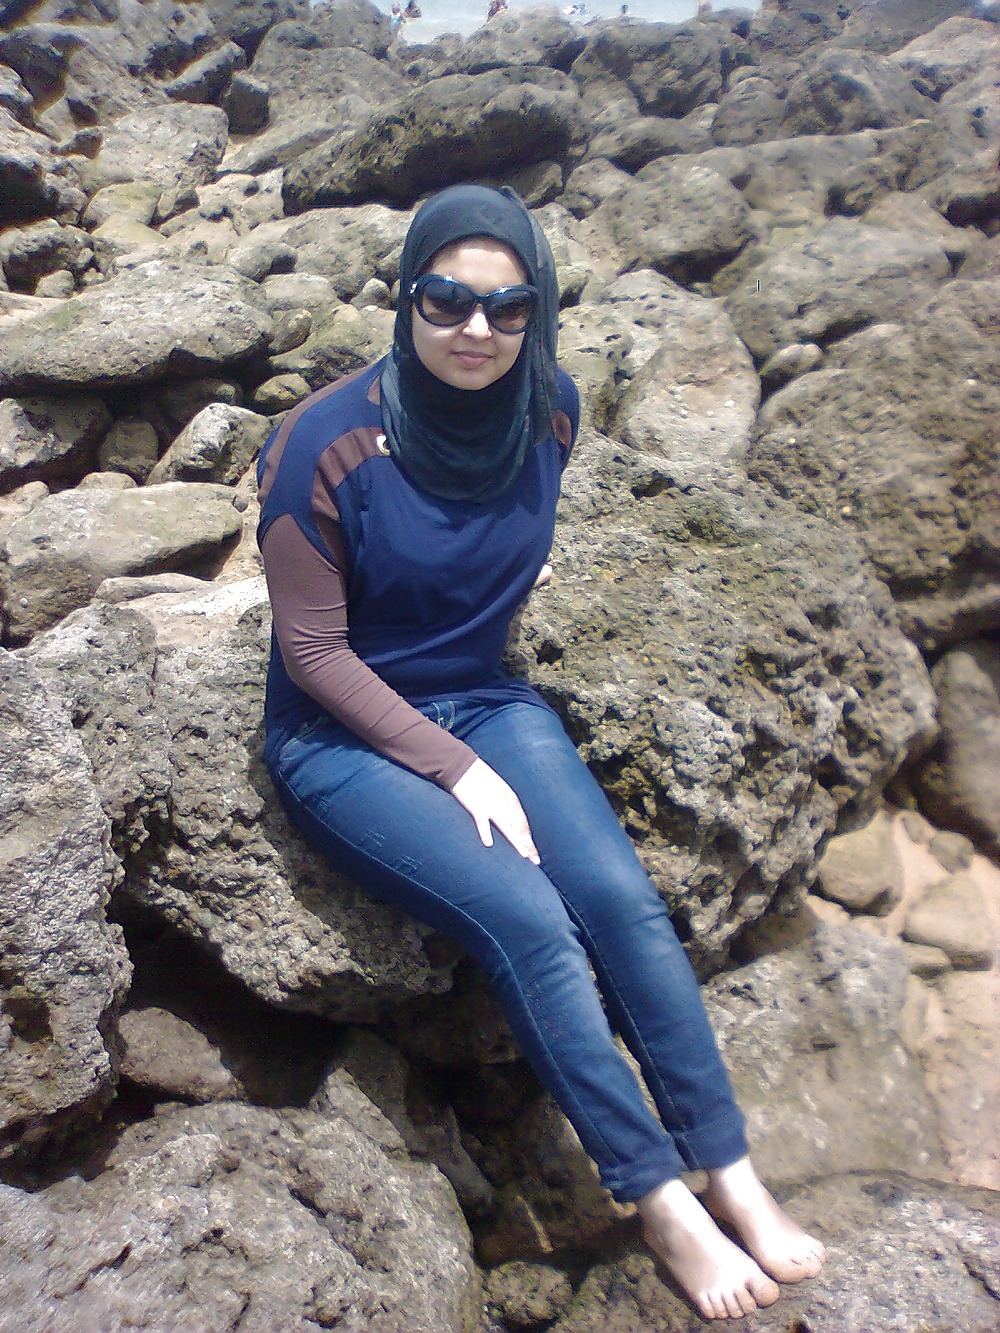 Sexy Feet Hijab Girl Maroc 25.03.2015 ( 1 ) adult photos